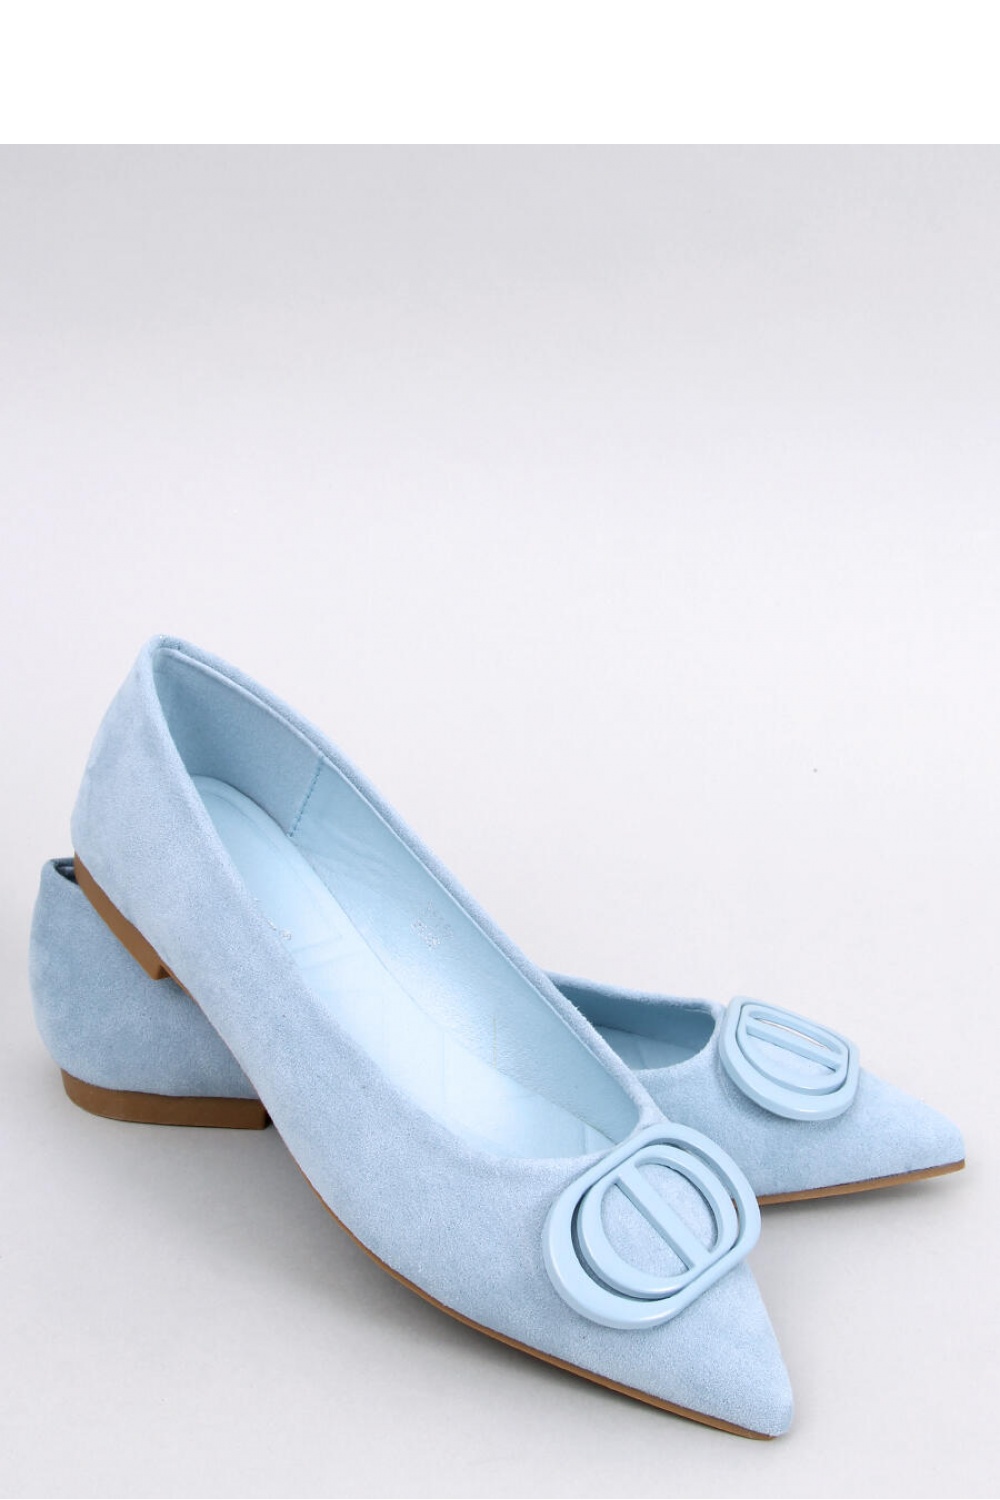 Ballerina Schuhe model 179324 Inello blau Damen